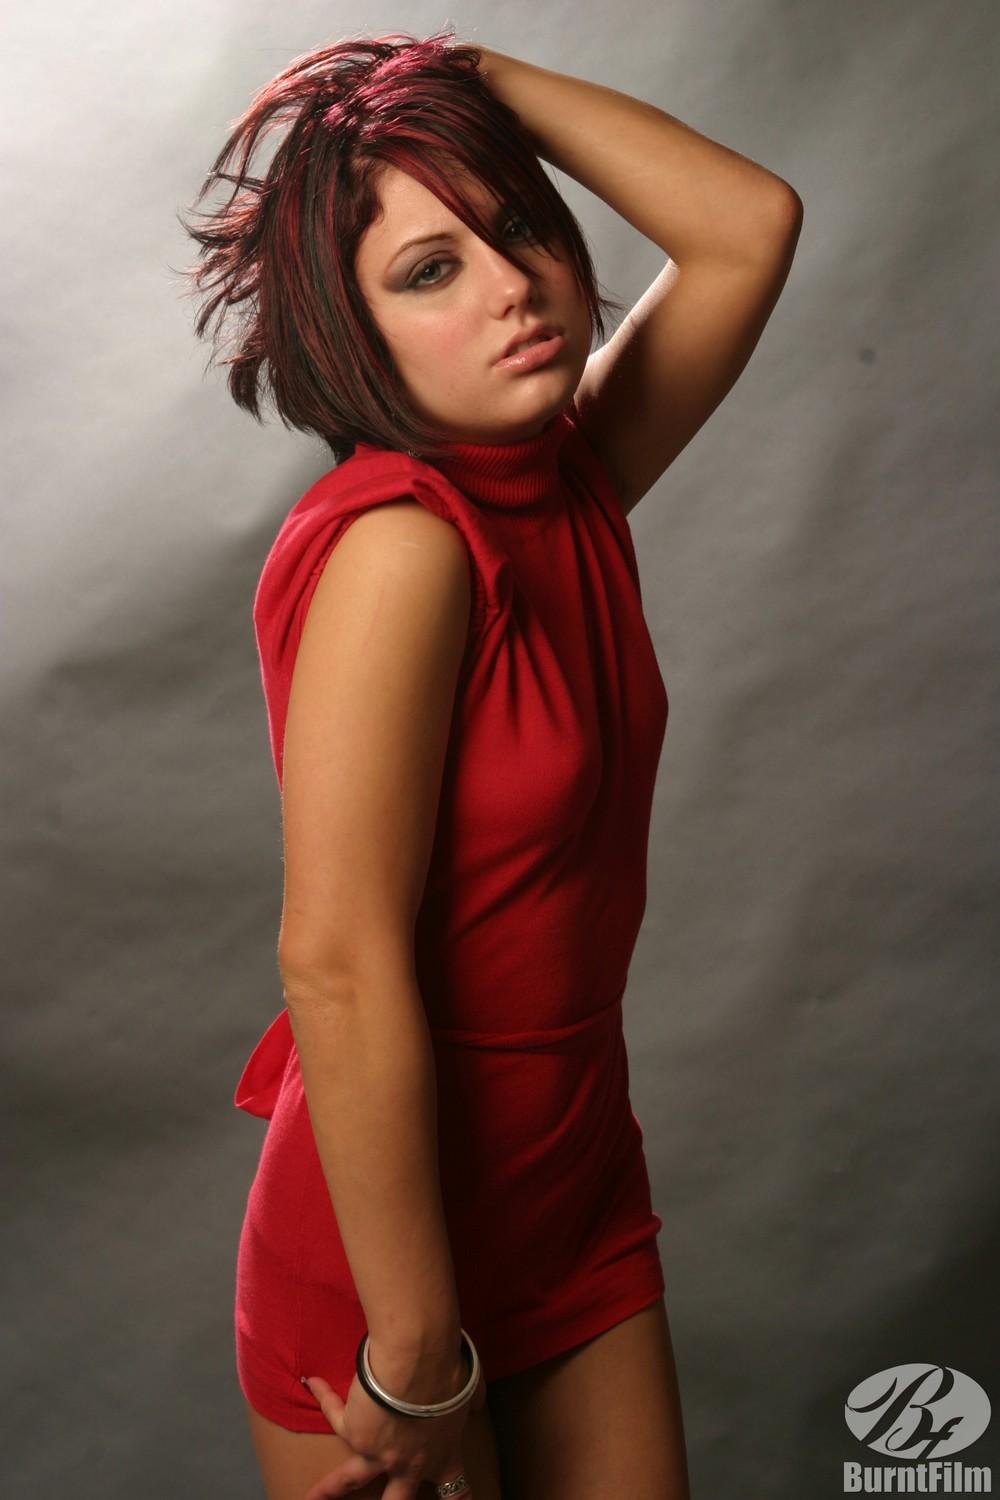 Modelo caliente risi simms da un strip tease en su vestido rojo
 #59873668